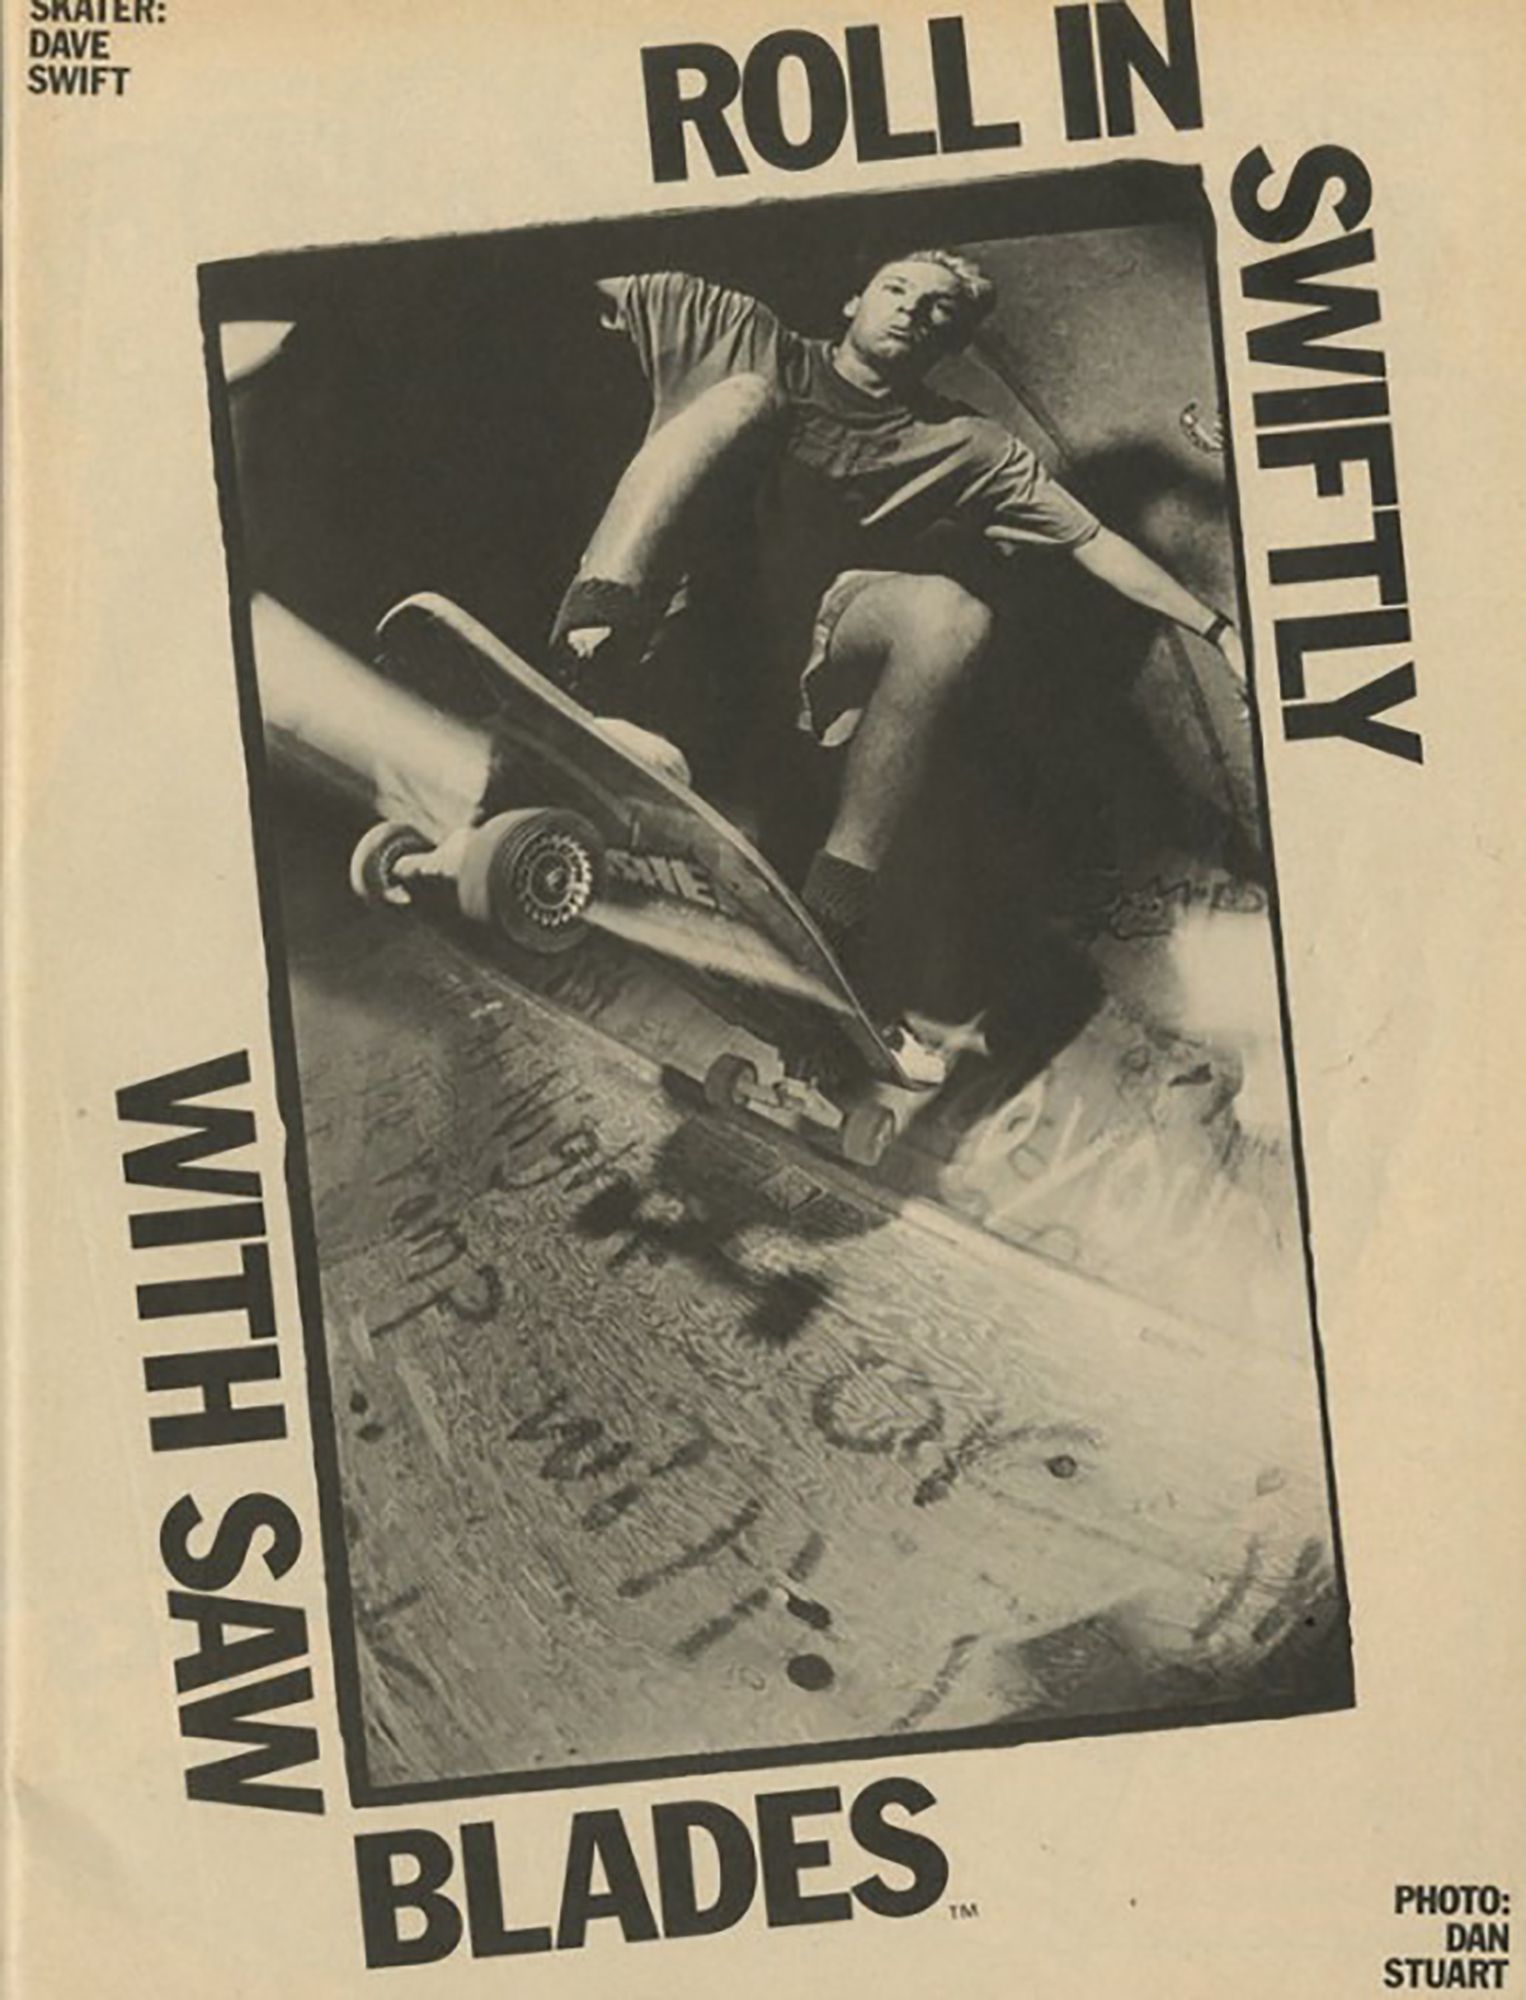 Daveschmitt-stix-roll-in-swiftly-1988